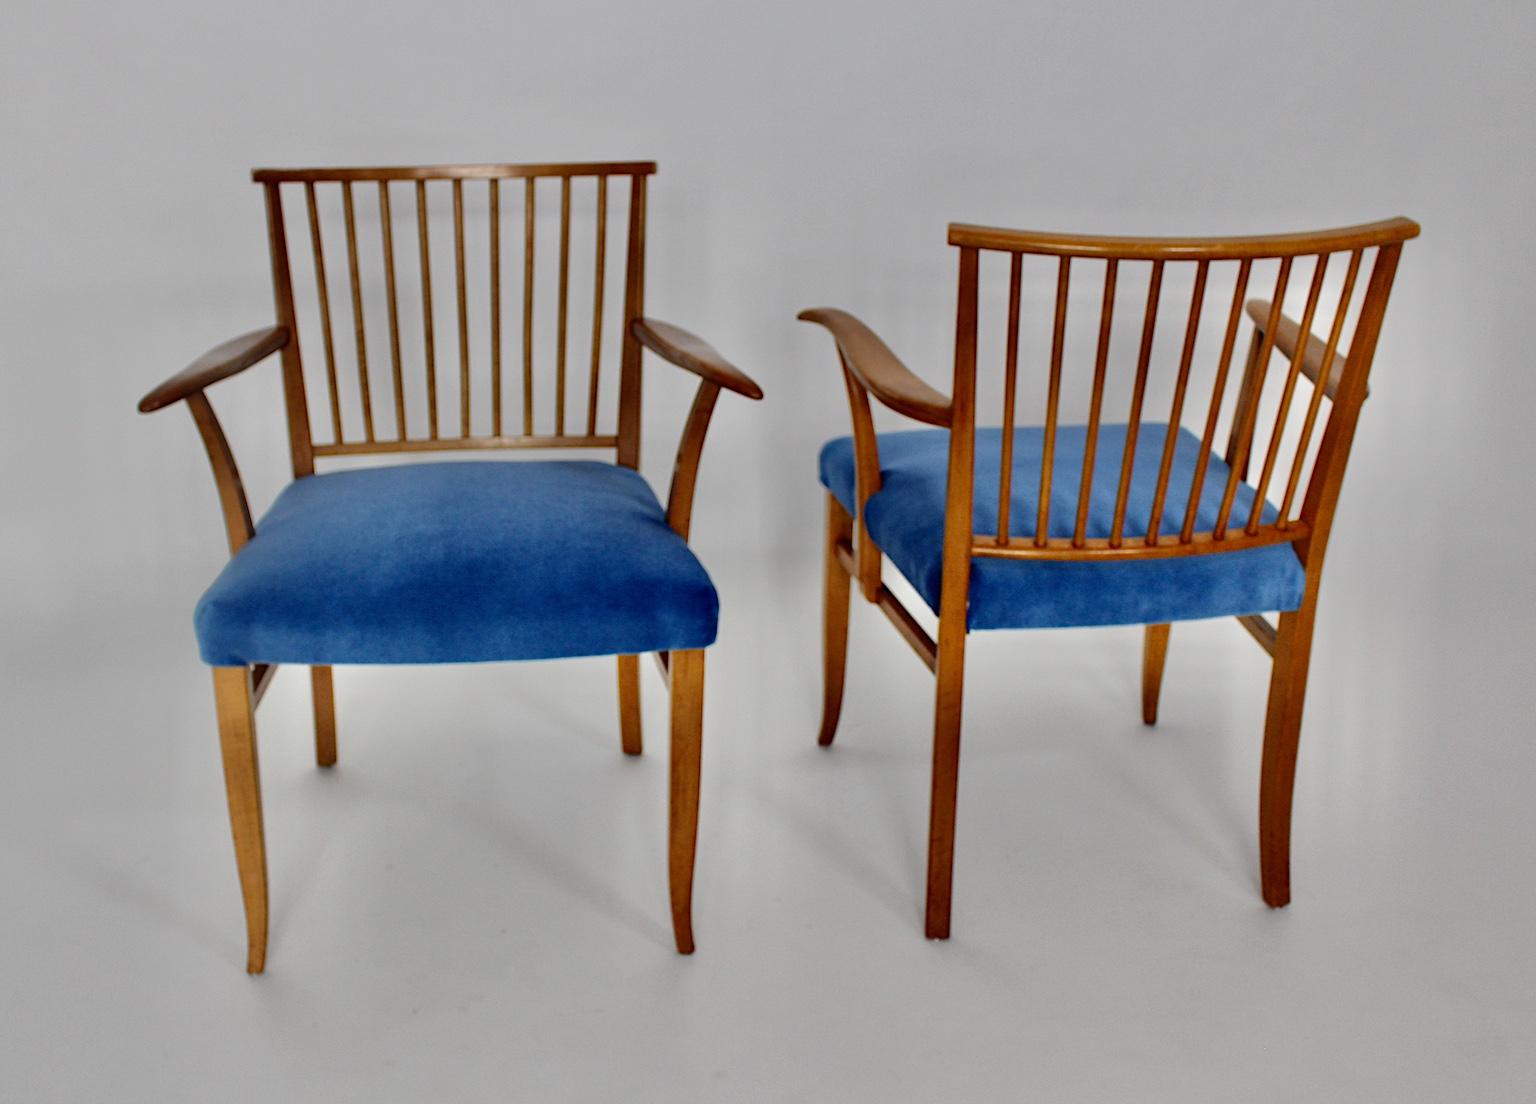 Art Deco Paar Kirschholzsessel oder -stühle, die Josef Frank zugeschrieben werden und die um 1927 in Wien entworfen und hergestellt wurden.
Der Speichenrücken zeigt eine elegante Oberfläche, während die leicht geschwungenen Armlehnen in den Rücken